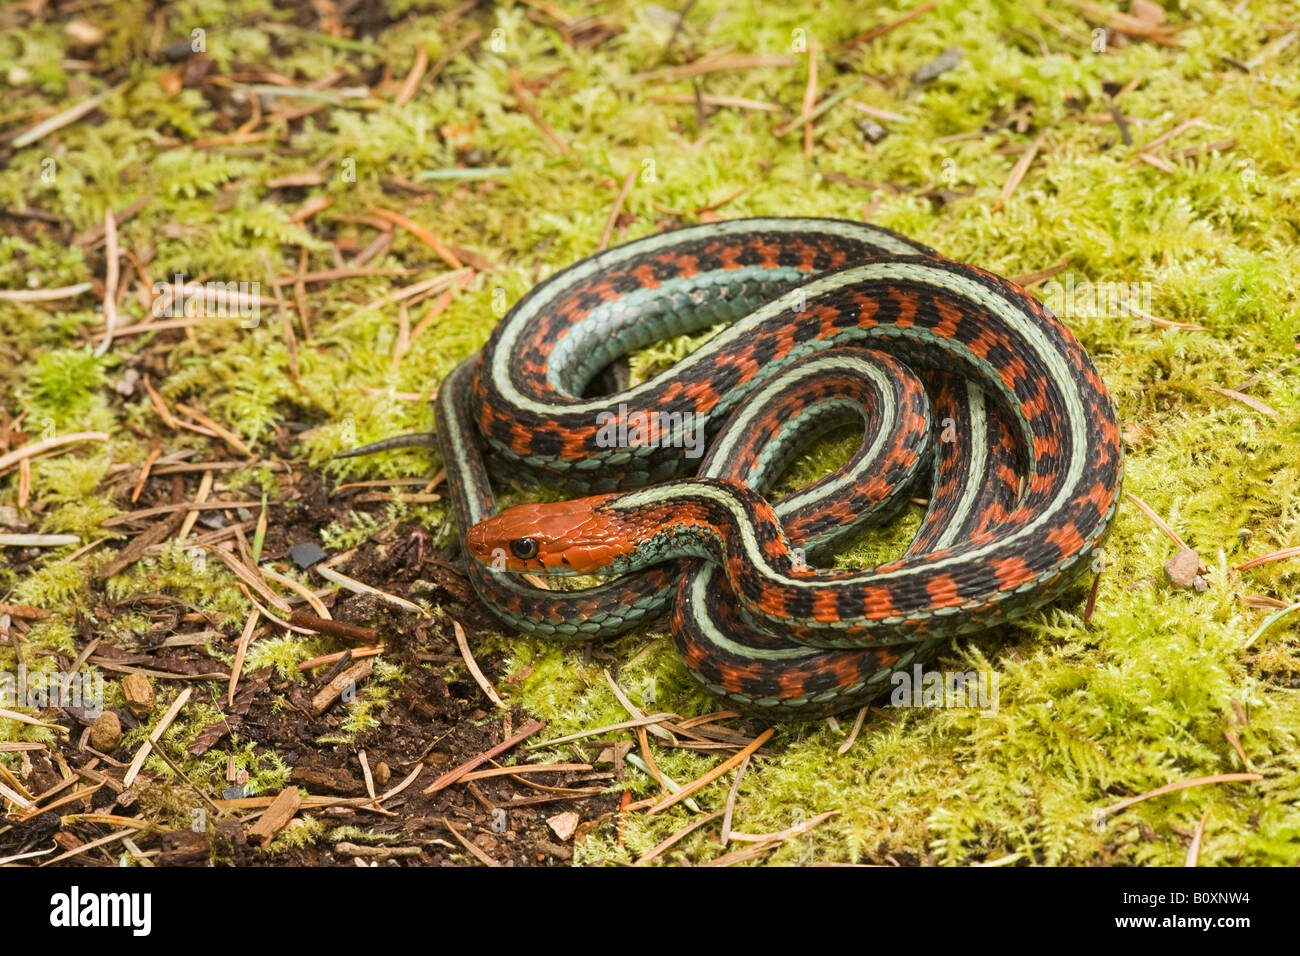 Kalifornien Rot beidseitig Garter Snake Thamnophis sirtalis infernalis Kalifornien der Vereinigten Staaten von Amerika. Manchmal als Thamnophis sirtalis tetrataenia bekannt. Stockfoto